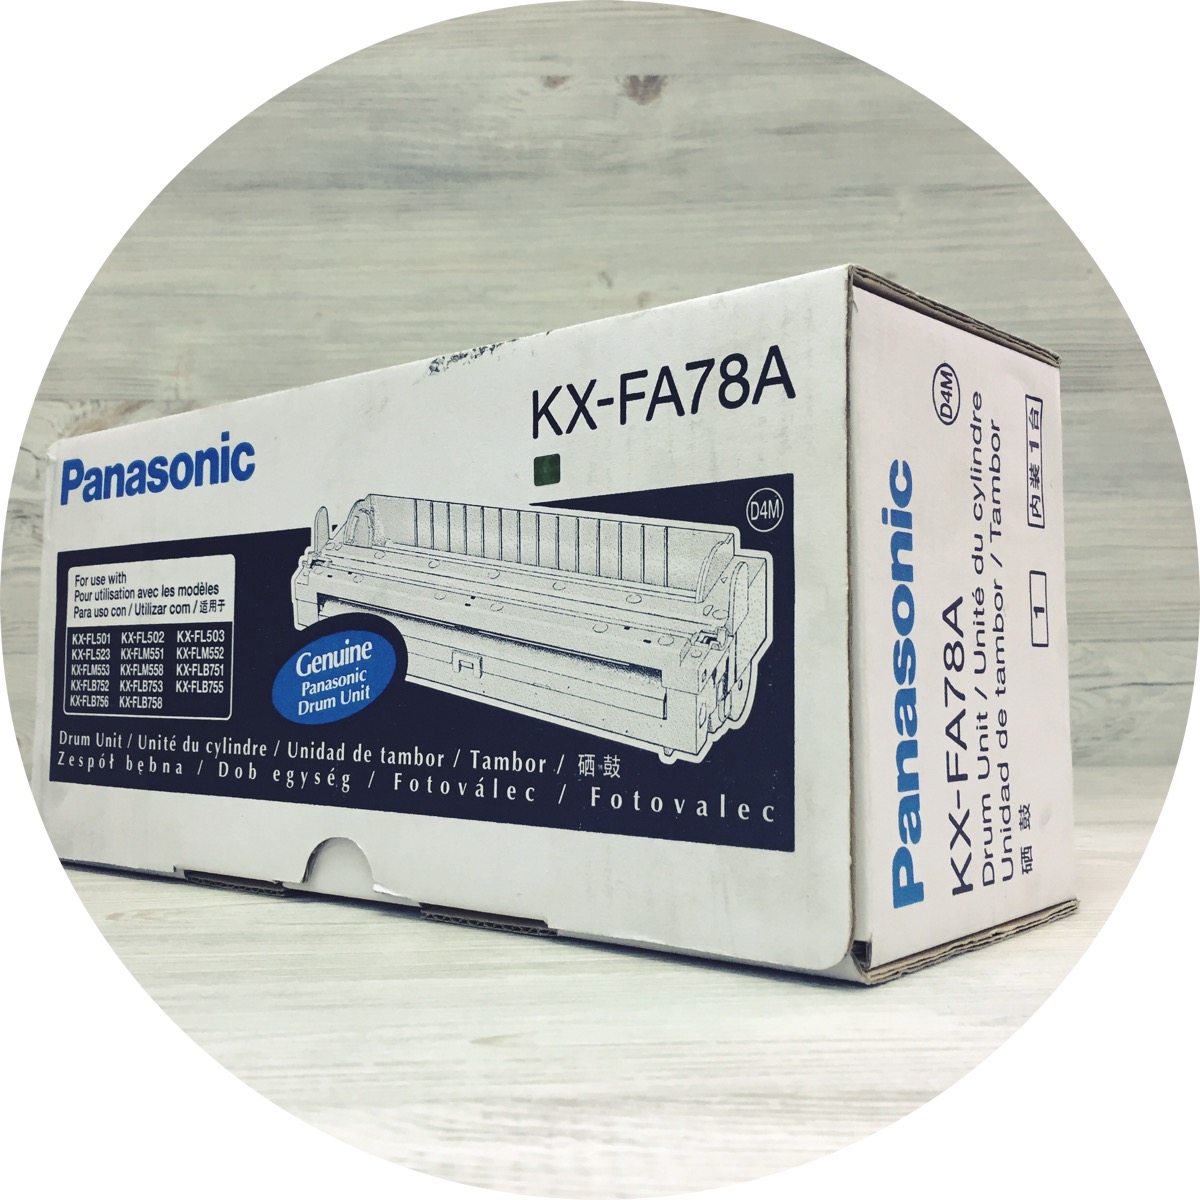   Panasonic KX-FA78A (6 000 .) 